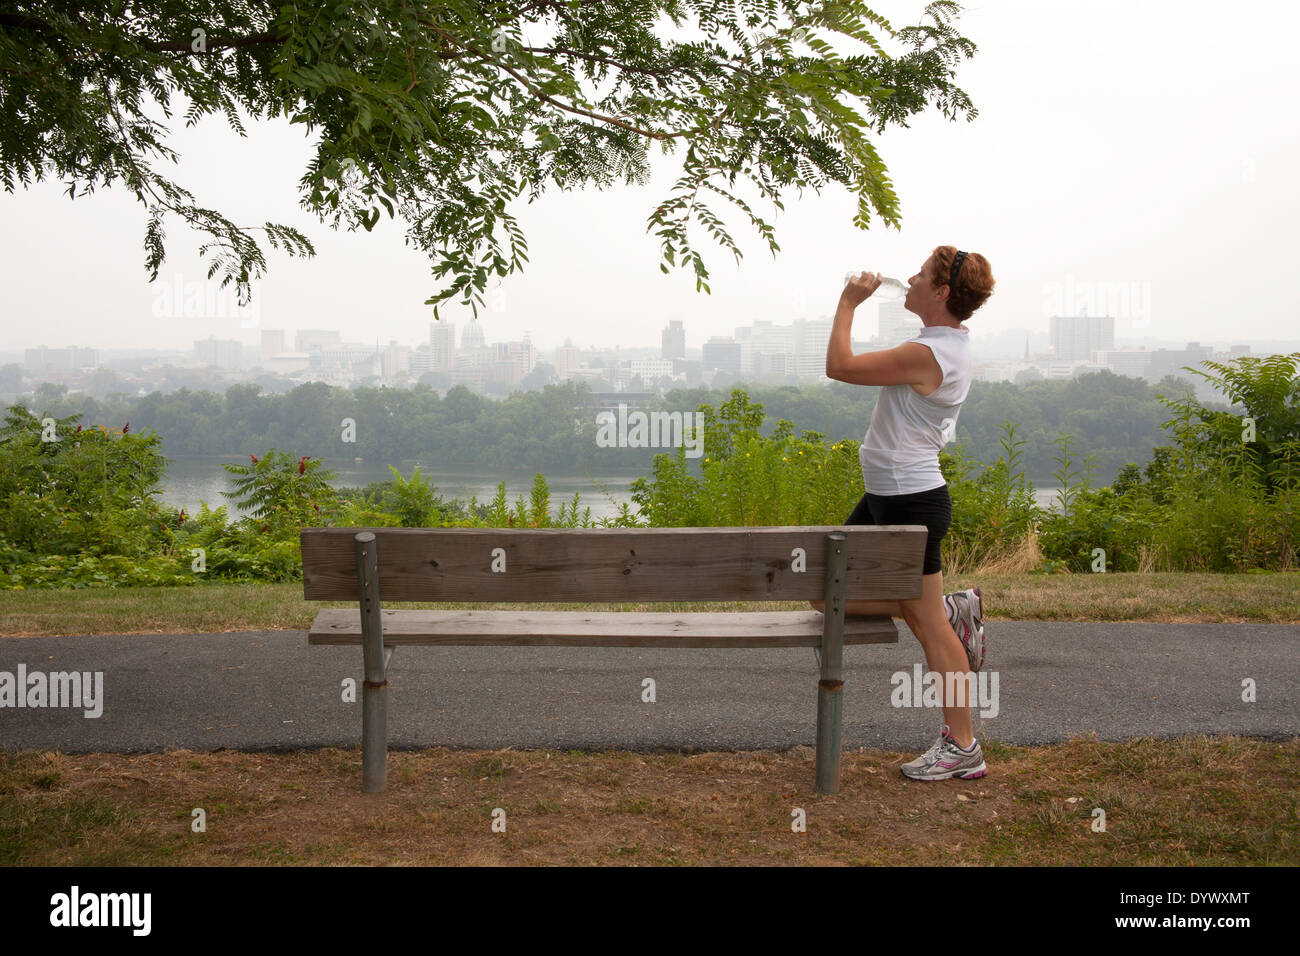 Femme mature de prendre une pause et de l'eau potable par le jogging sur un banc de parc avec vue sur la ville Banque D'Images